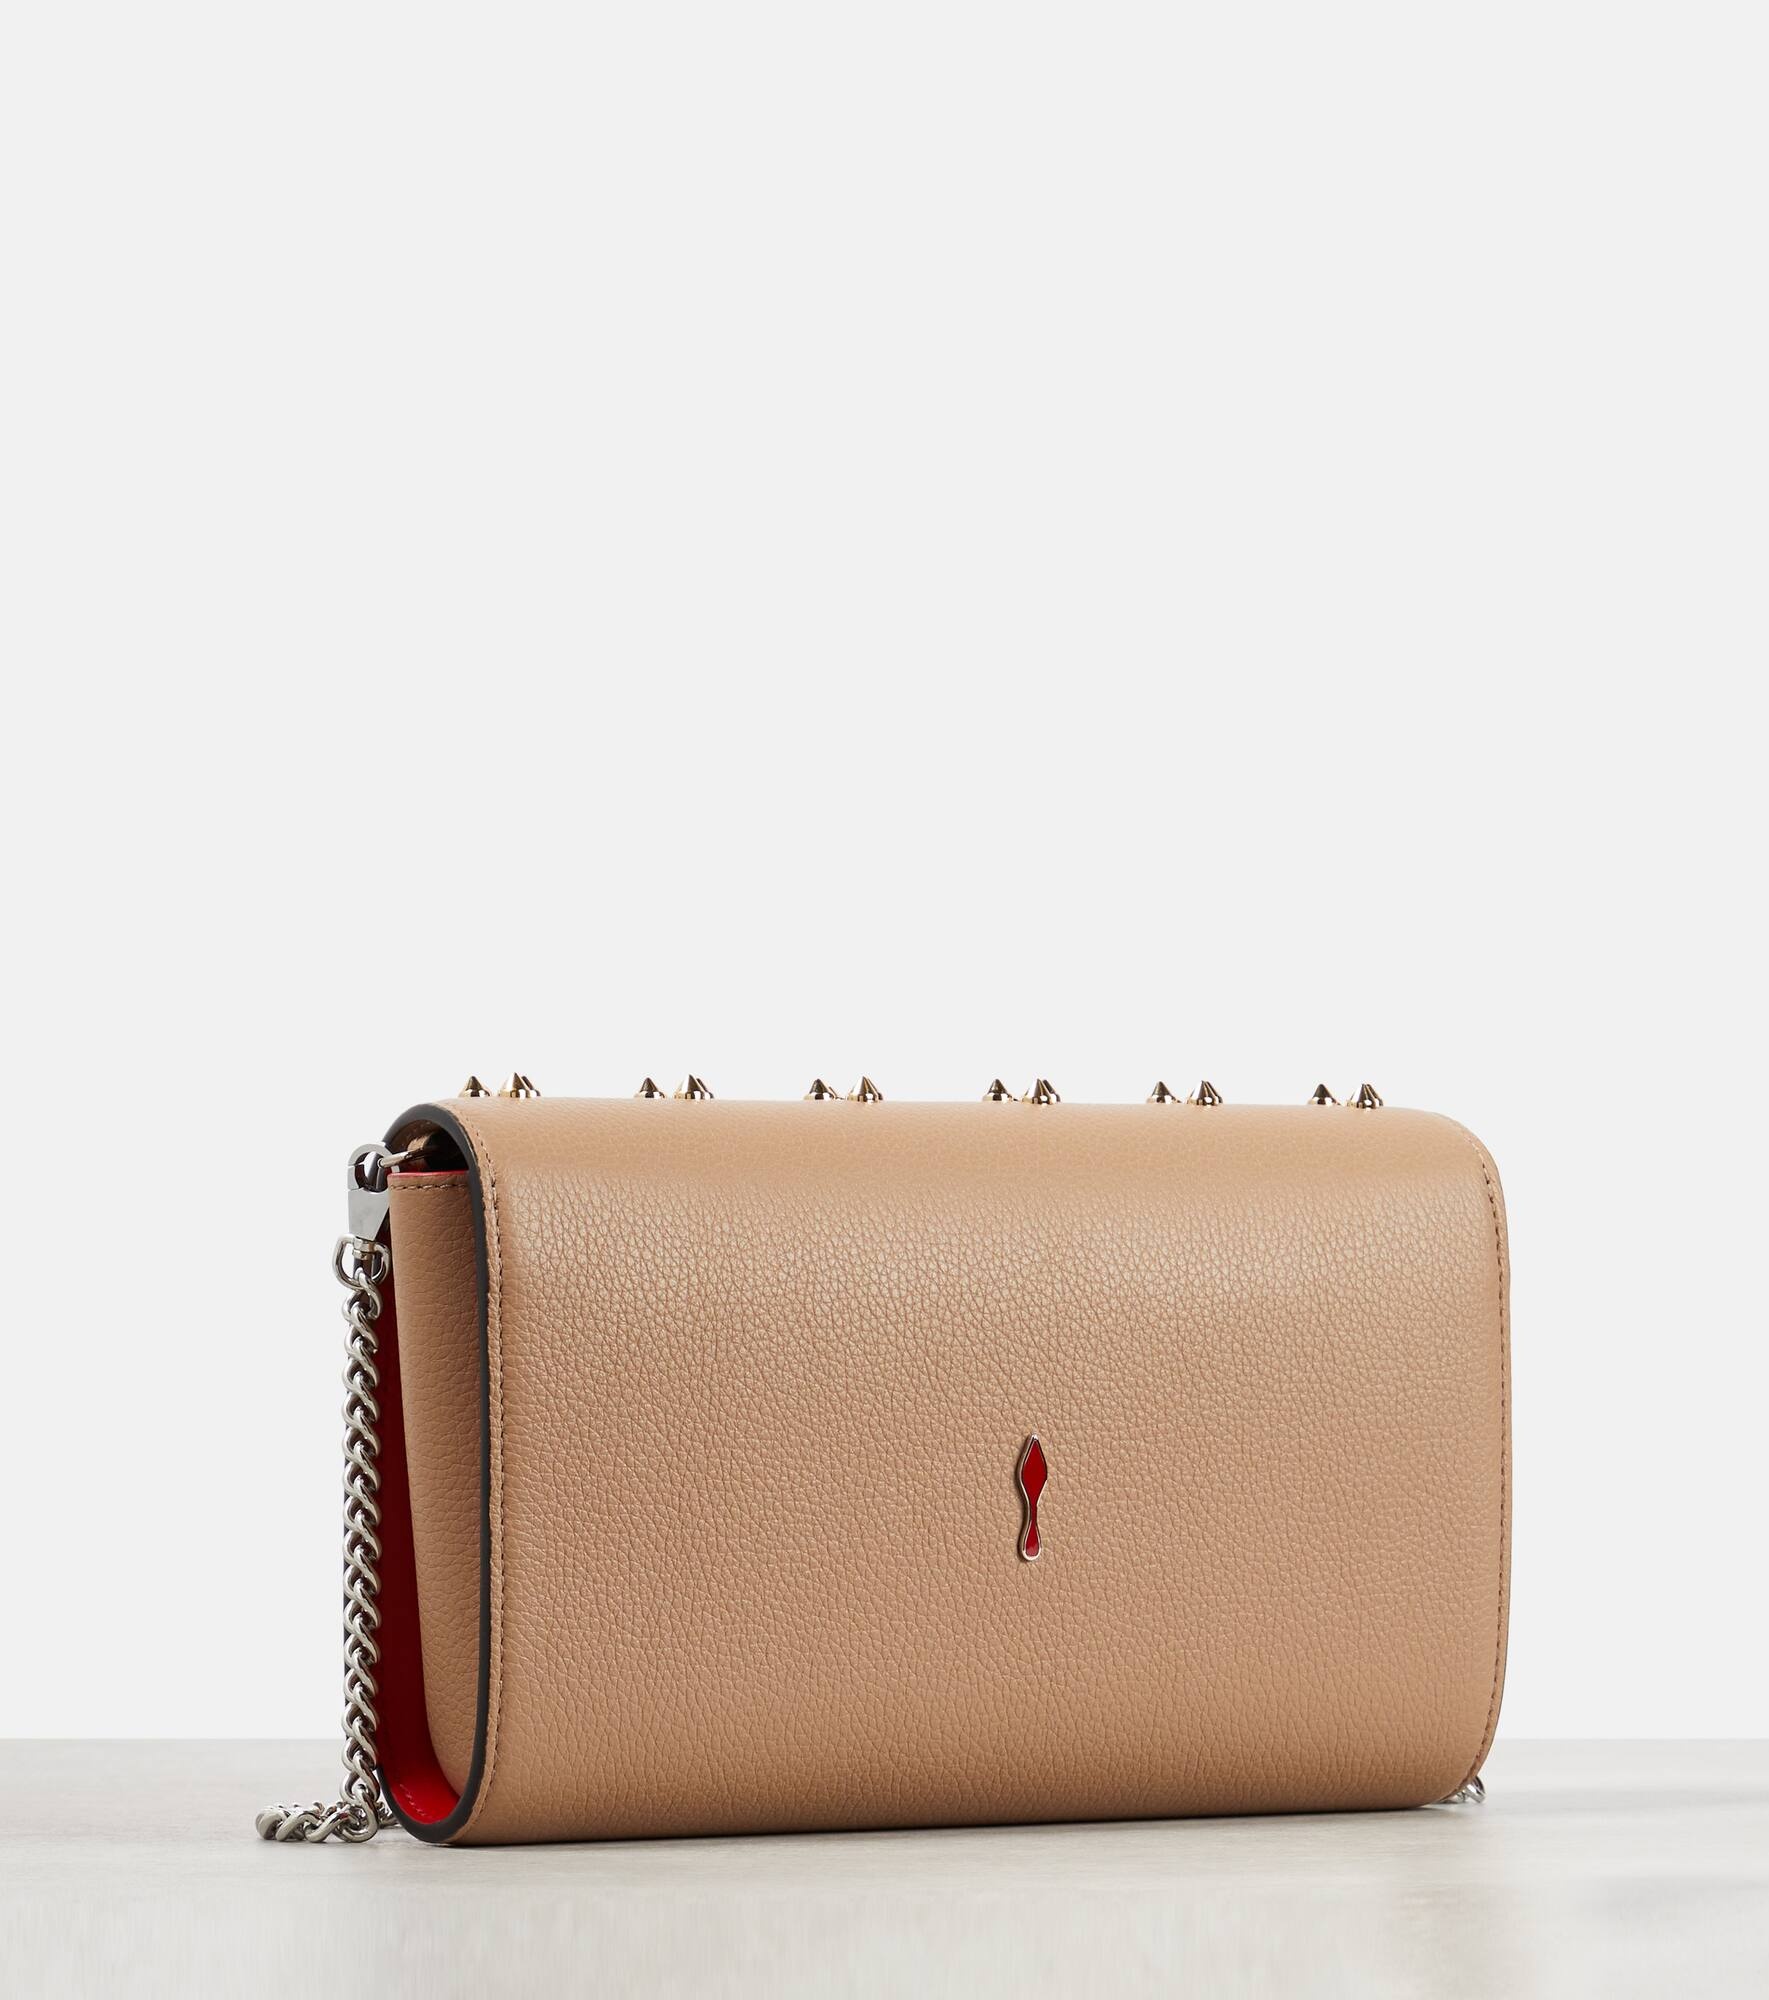 Paloma embellished leather shoulder bag - 4